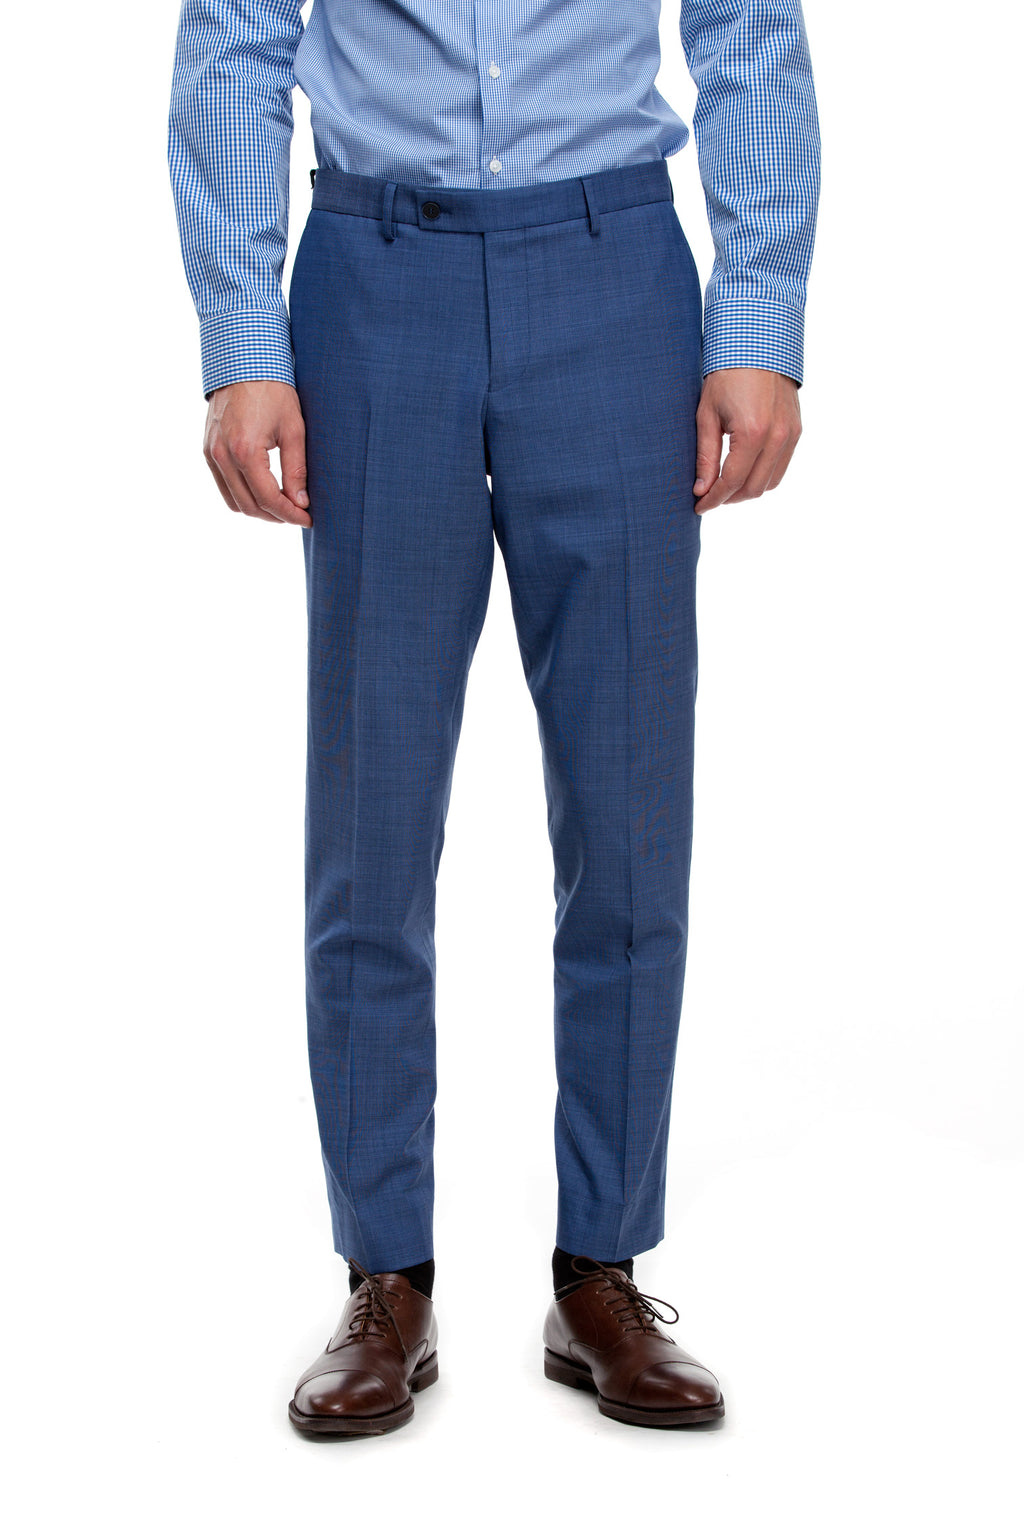 Custom Navy Blue Pants ottotos